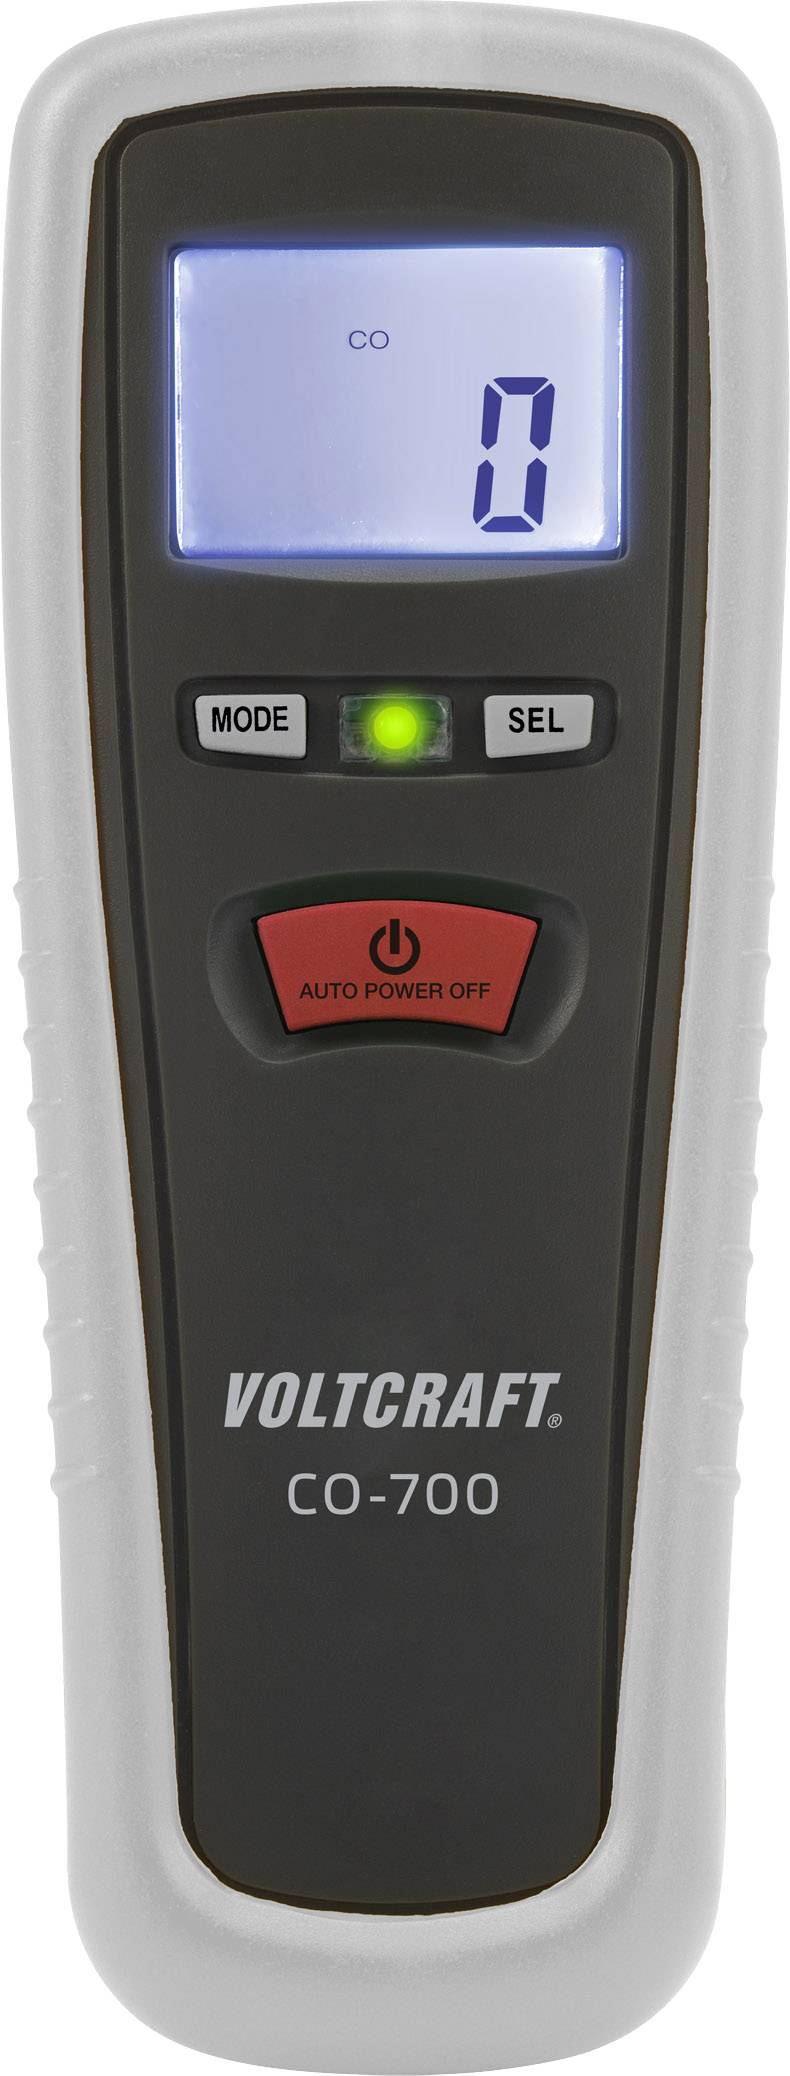 VOLTCRAFT CO-700 Kohlenmonoxid-Messgerät 0-1000ppm